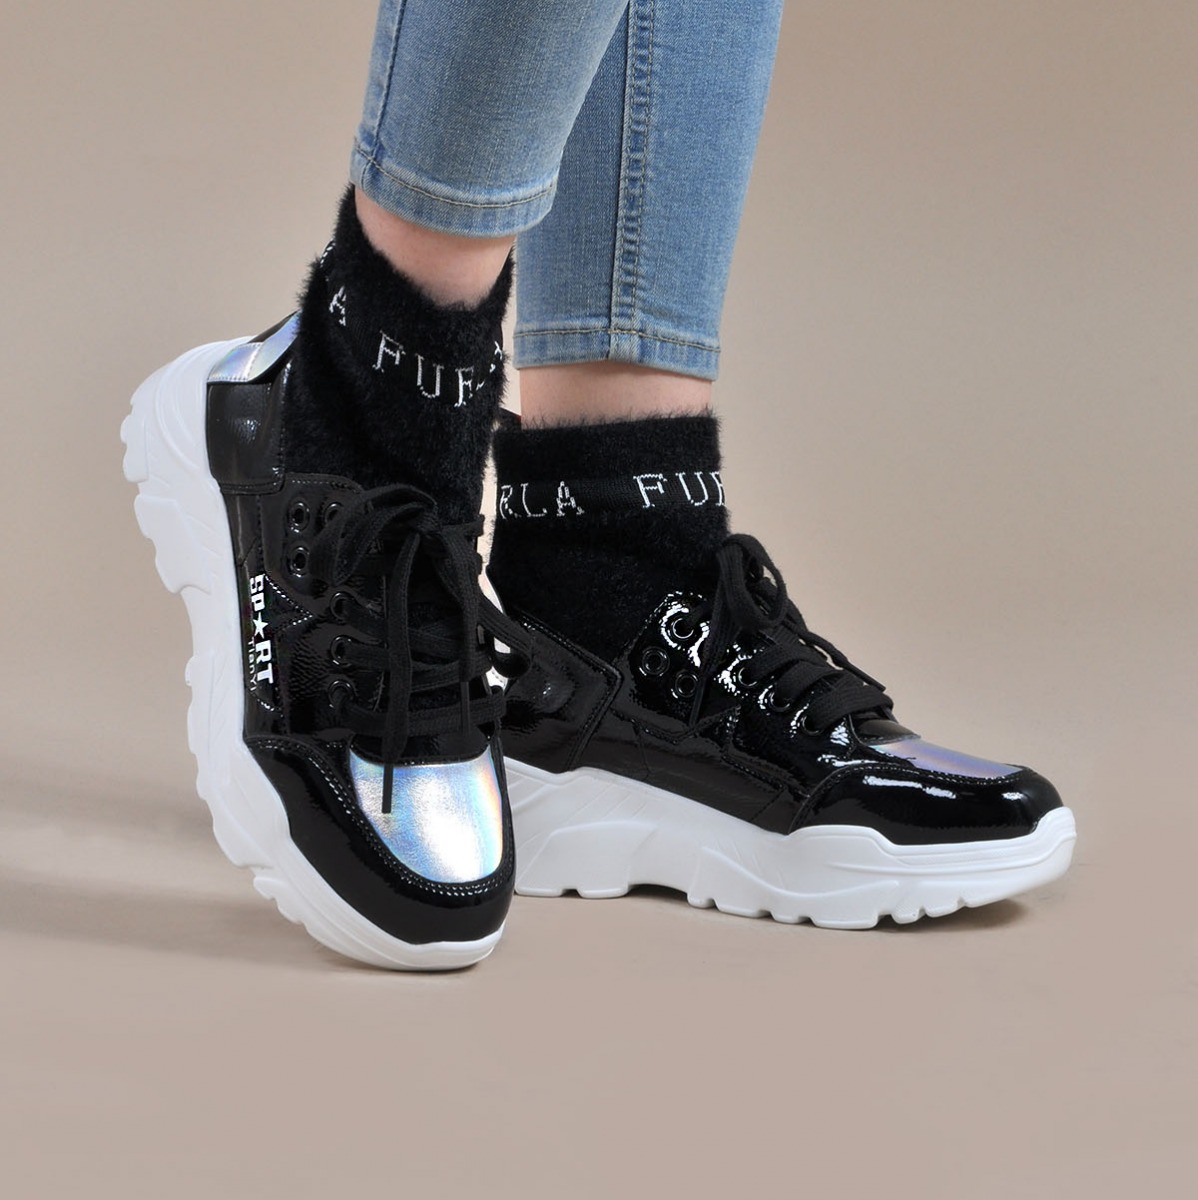 Flo Kadın Siyah Spor Sneaker Ayakkabı VZN19-084K. 1